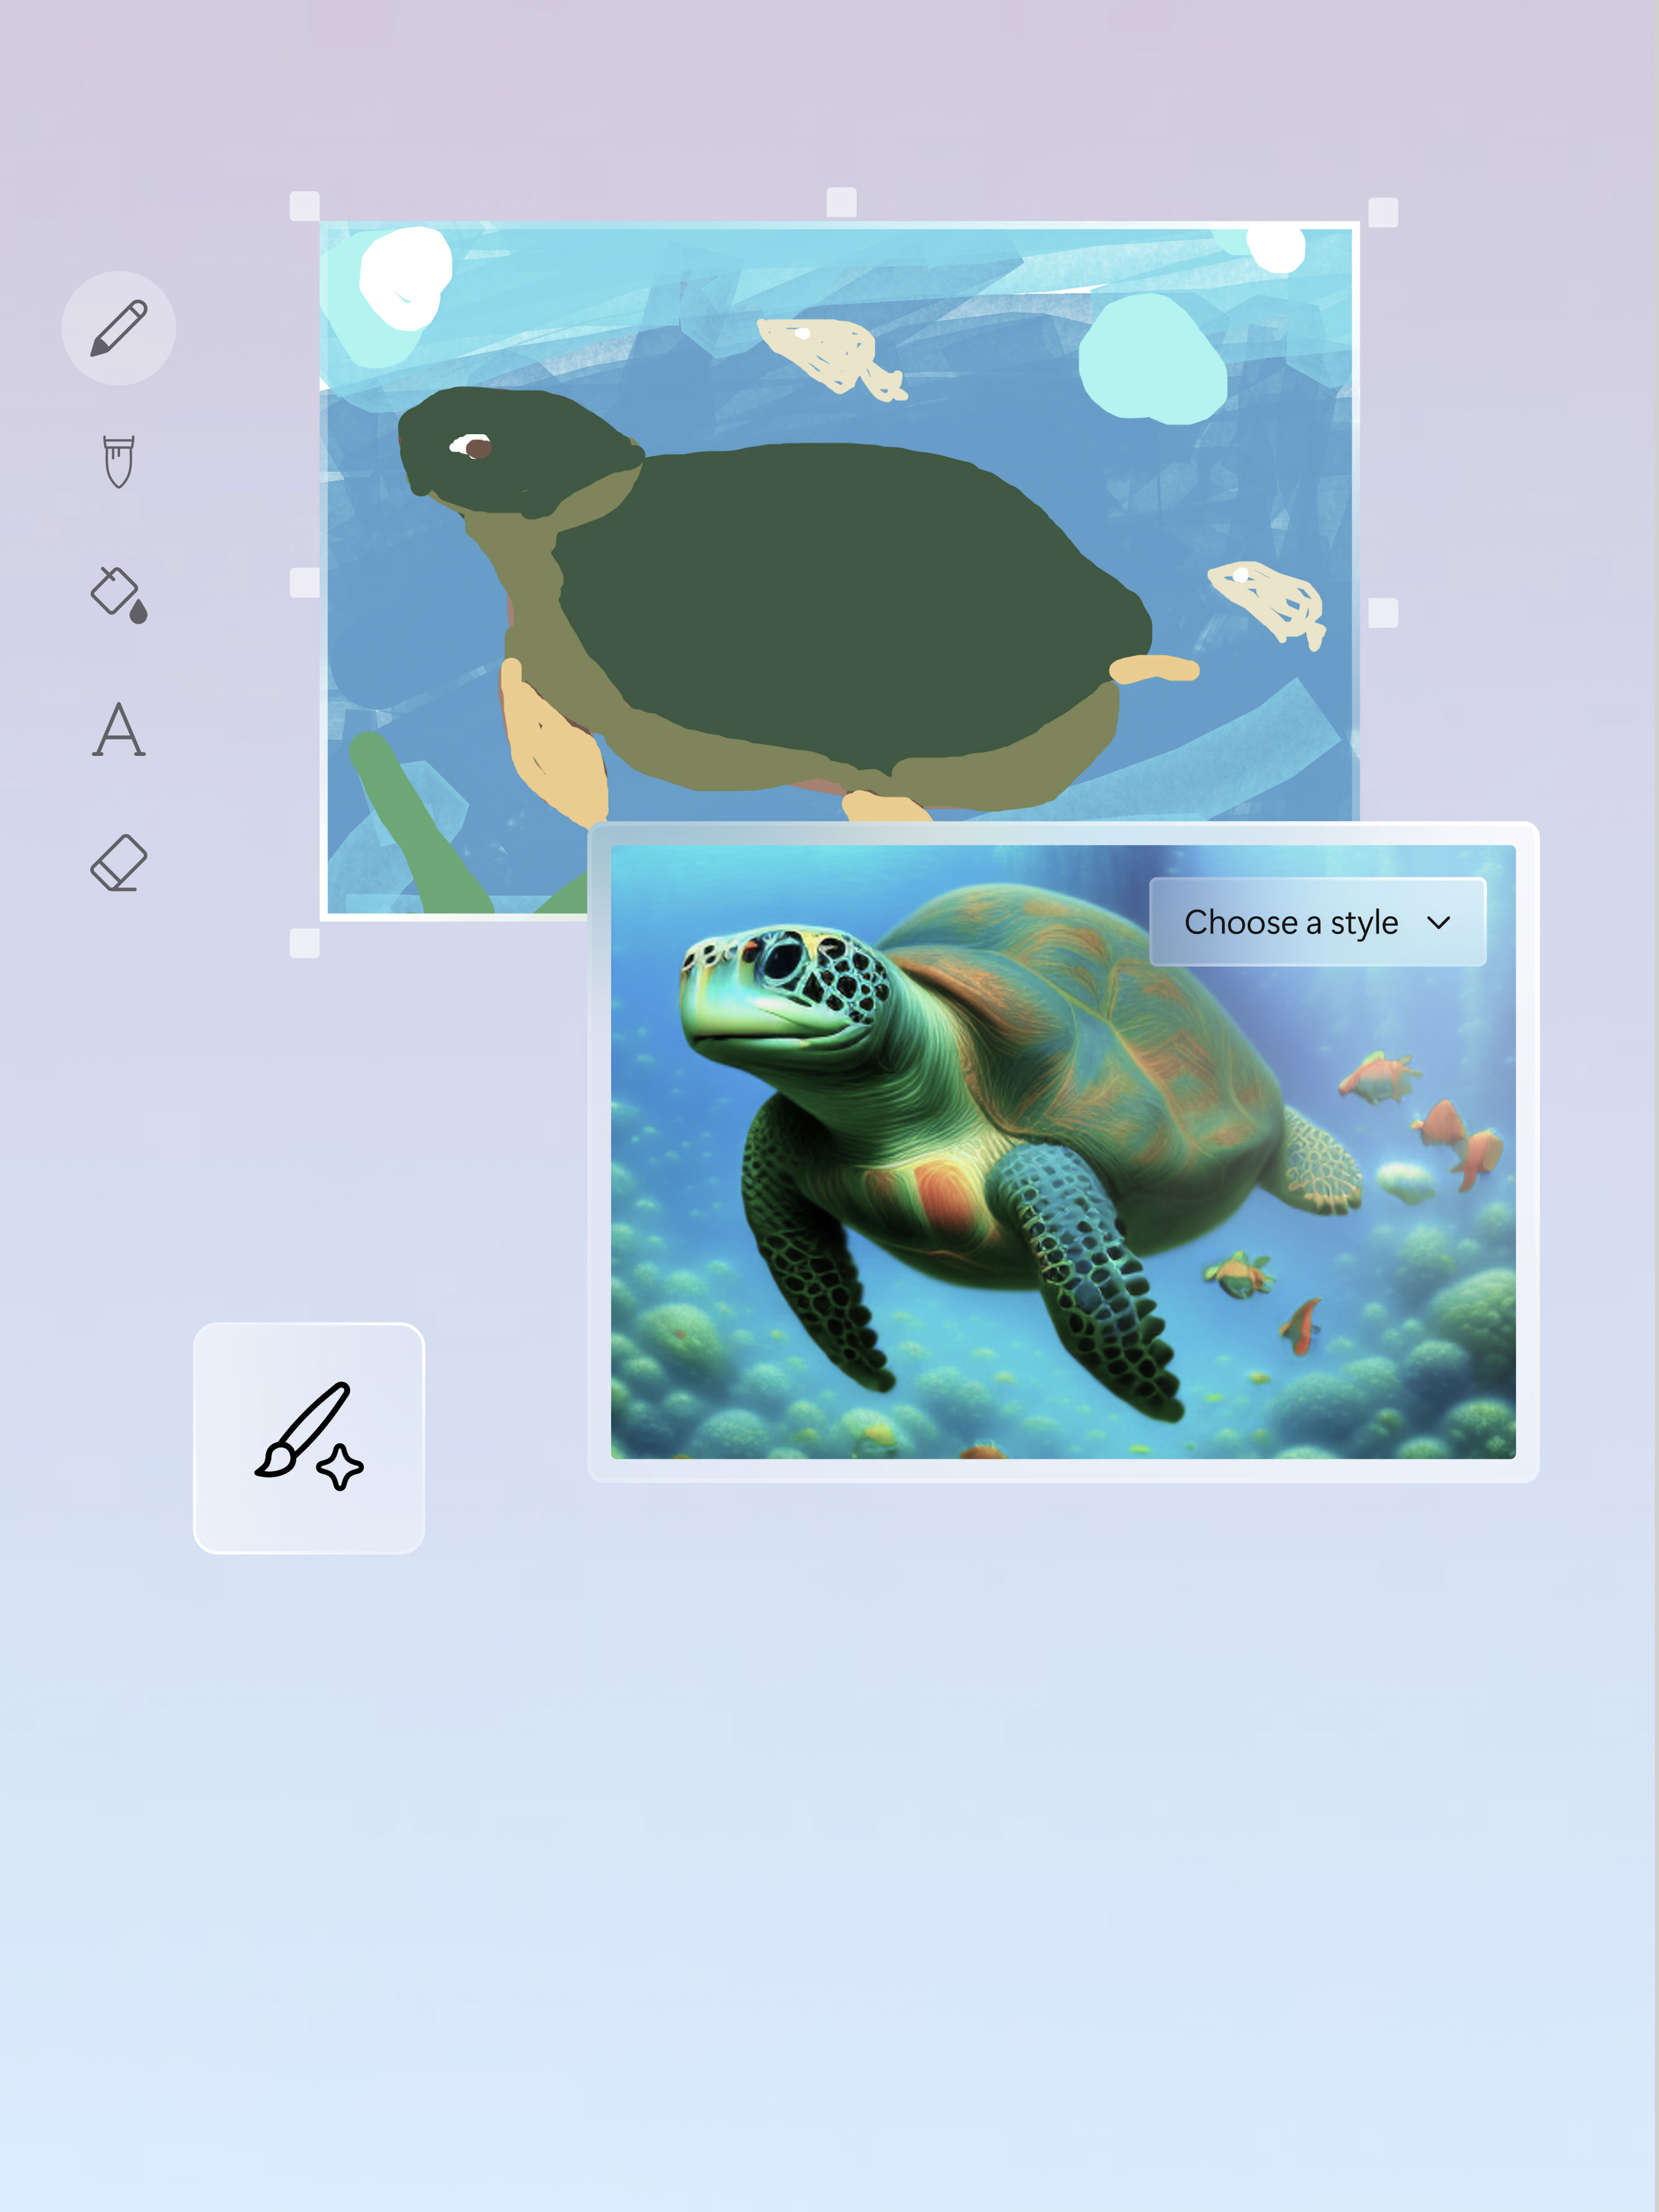 Egy teknősbéka művészi ábrázolása és képe